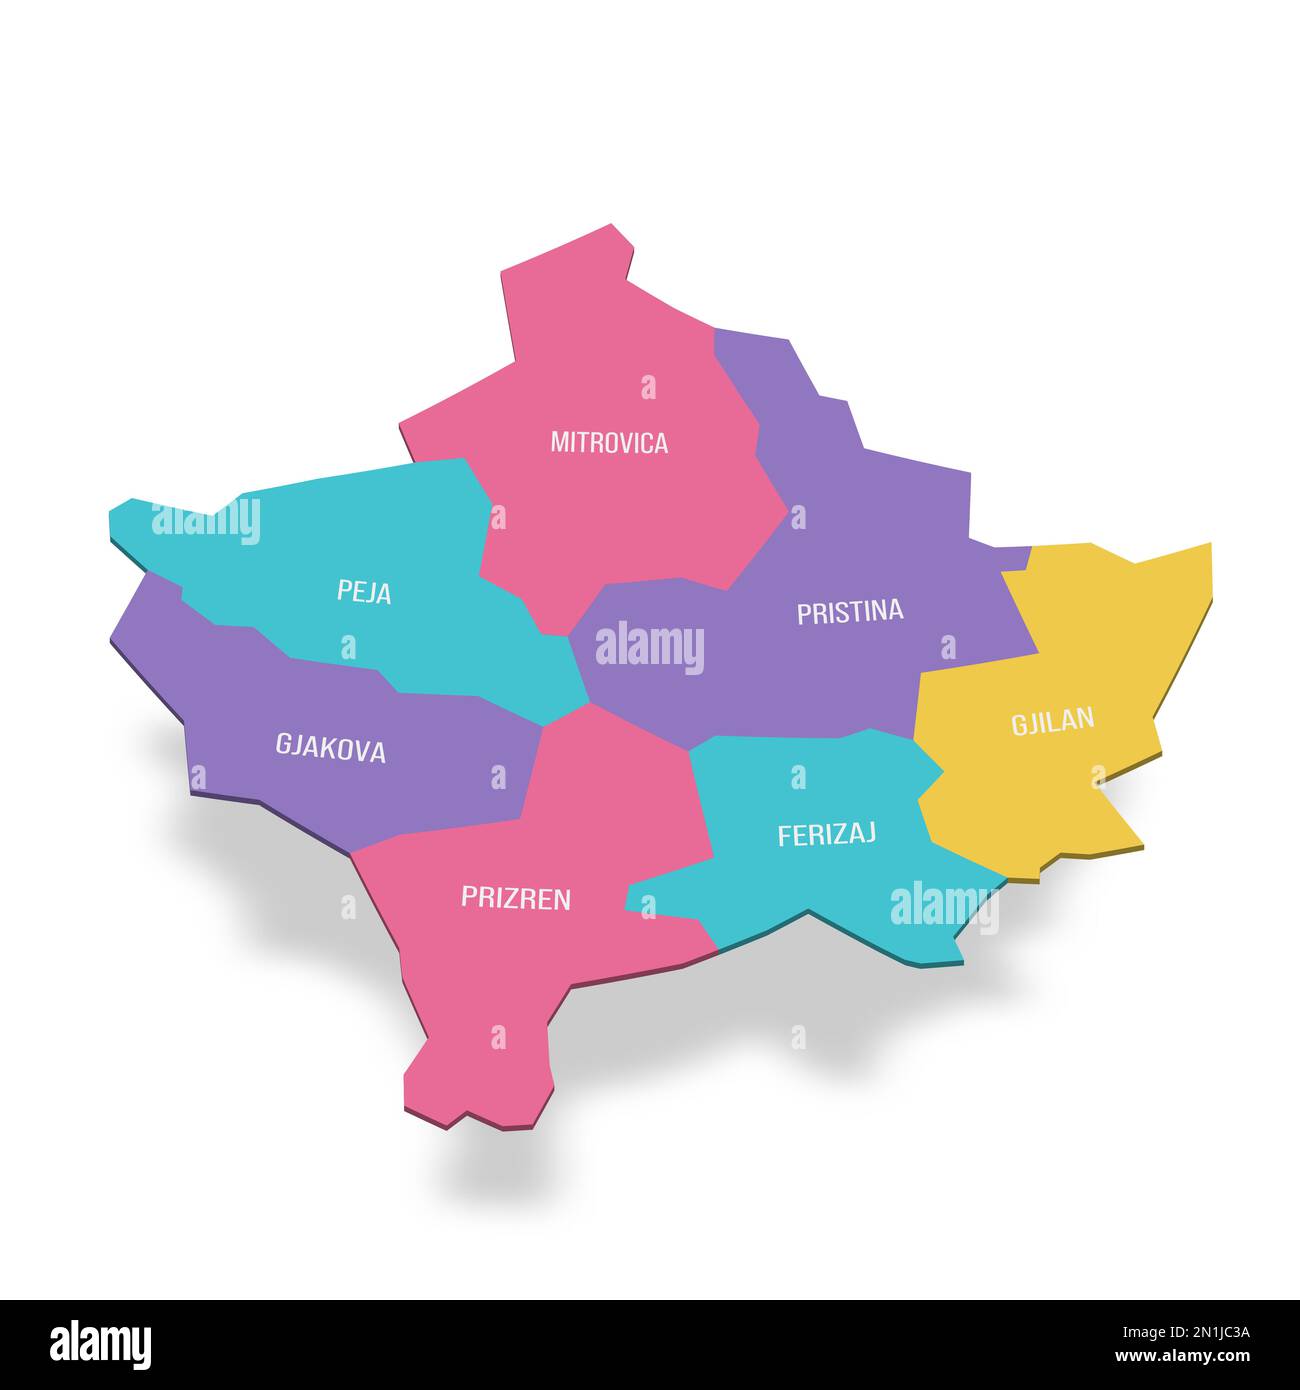 Mappa politica del Kosovo delle divisioni amministrative - distretti. Mappa vettoriale a colori 3D con etichette dei nomi. Illustrazione Vettoriale